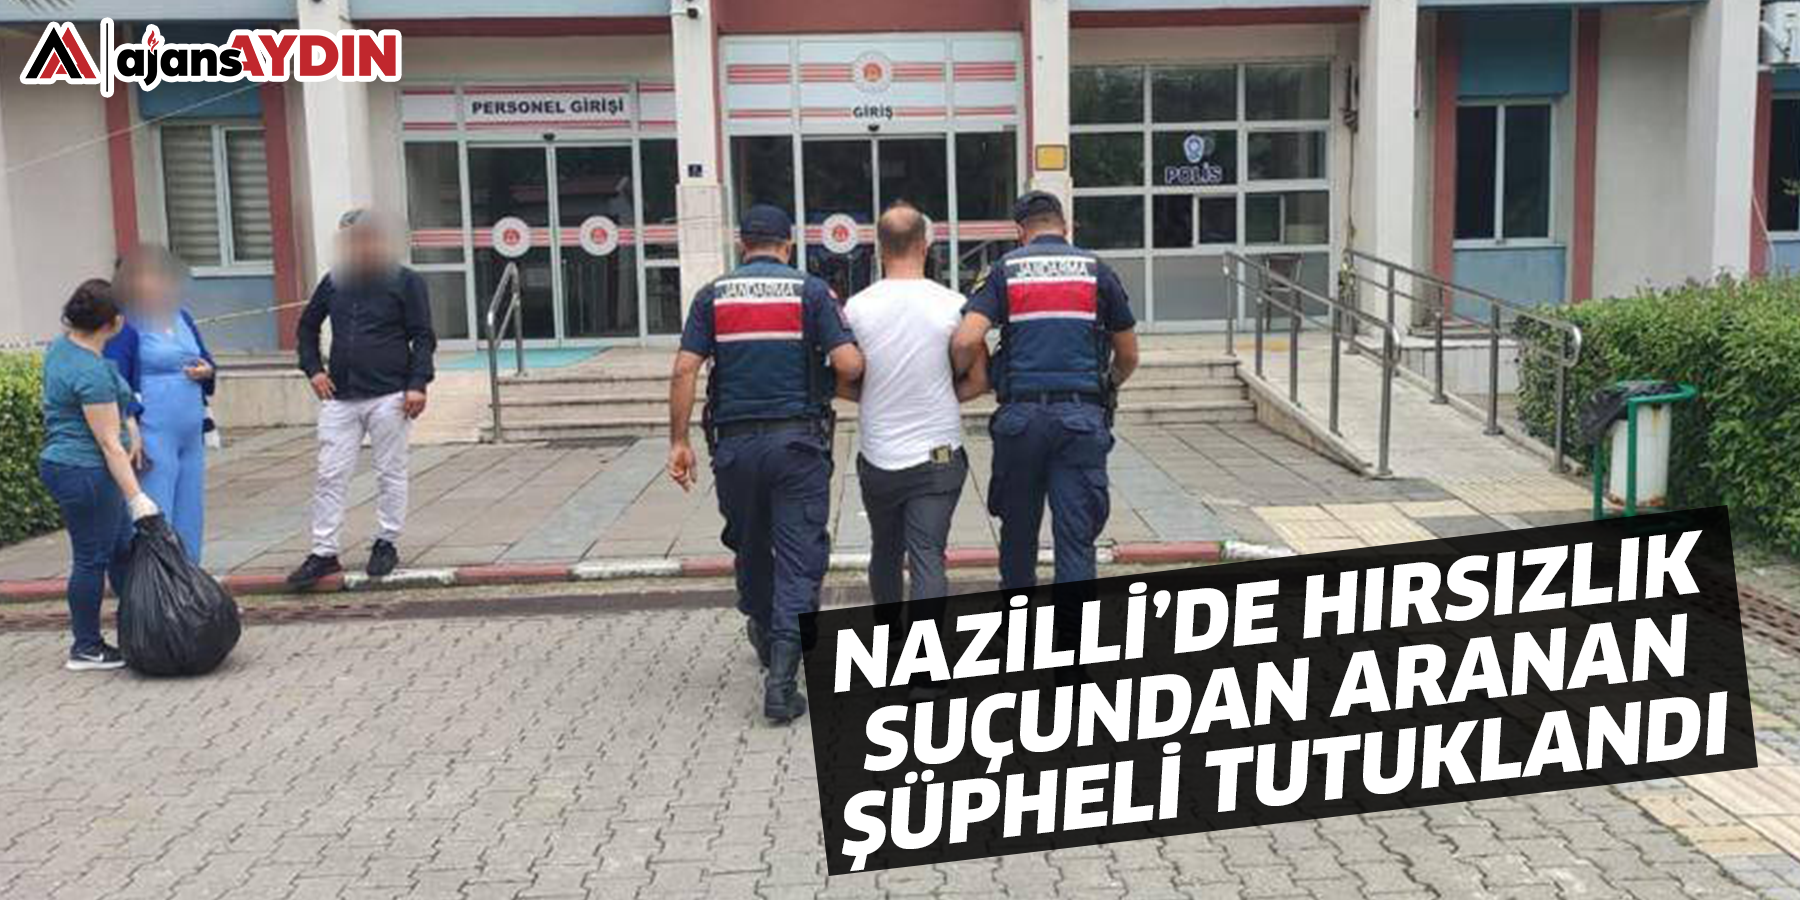 Nazilli'de hırsızlık suçundan aranan şüpheli tutuklandı